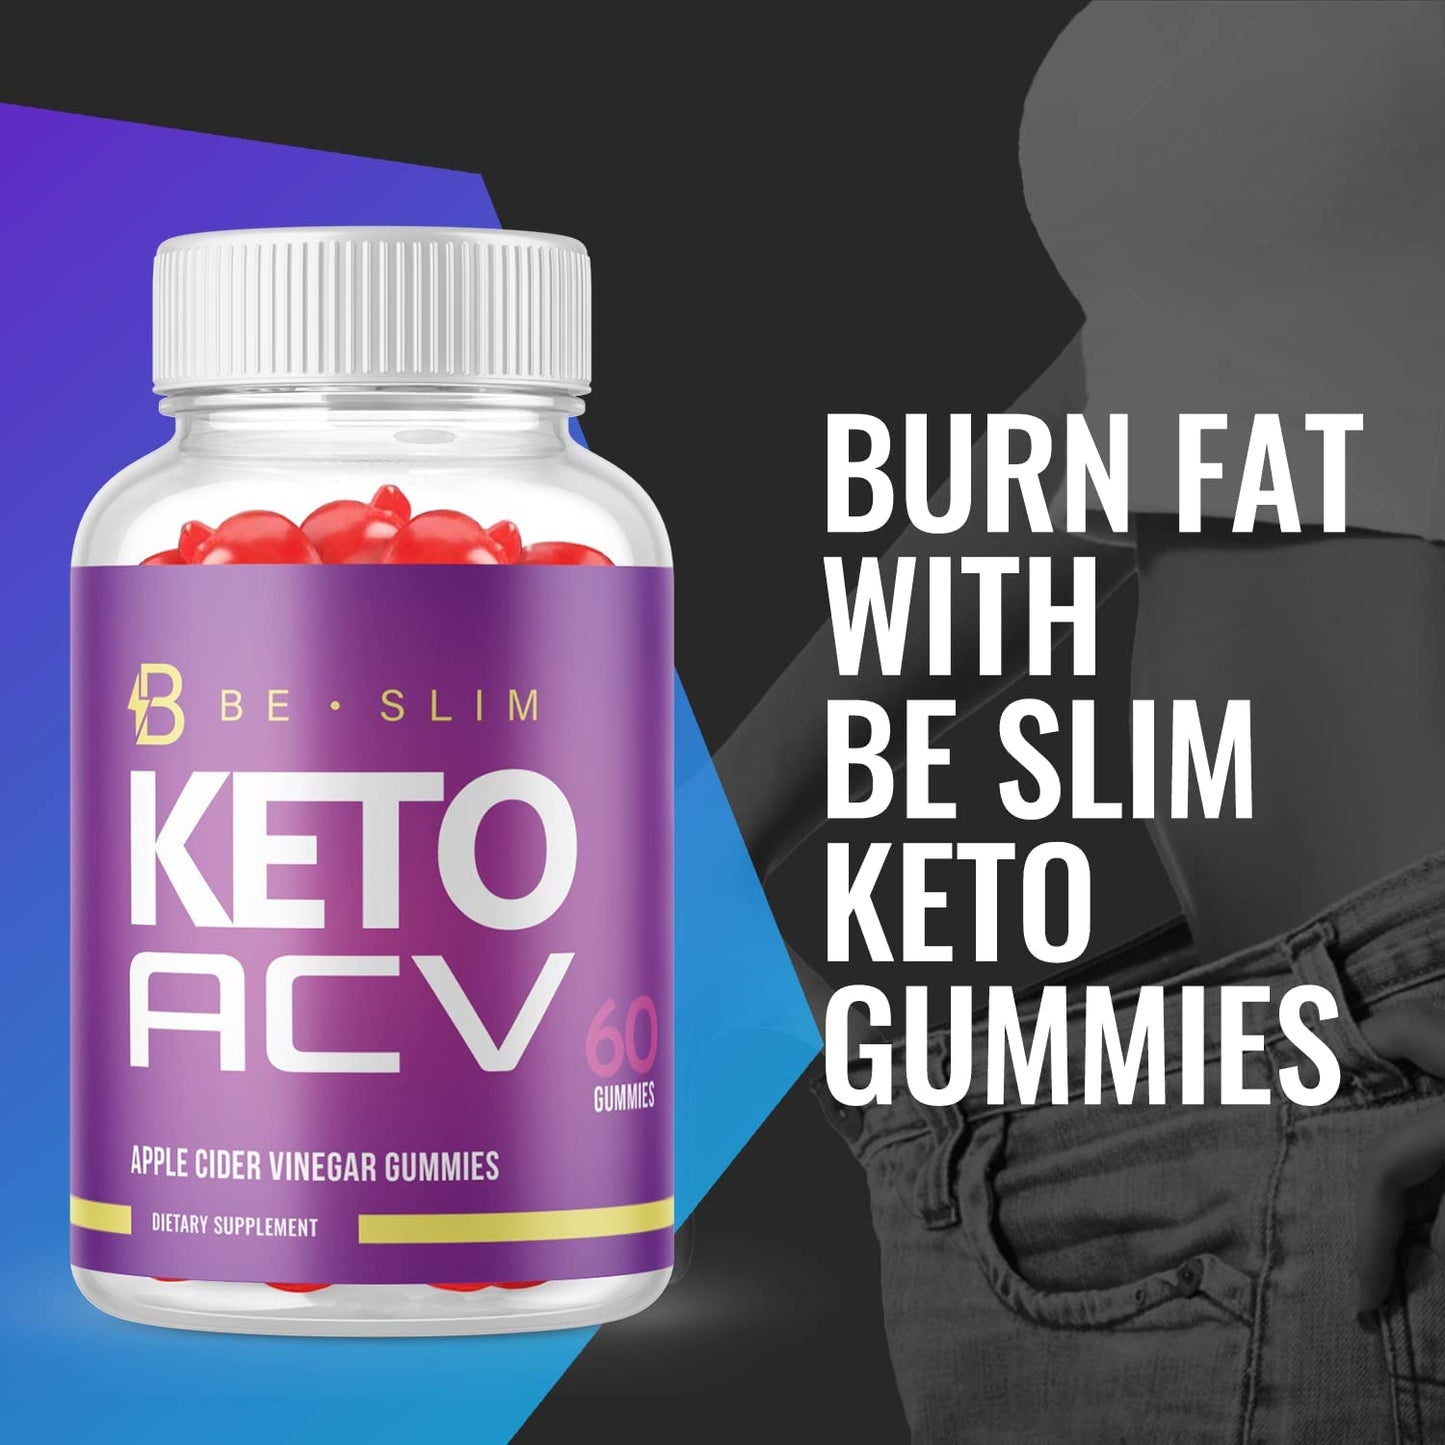 Be Slim Keto ACV Gummies